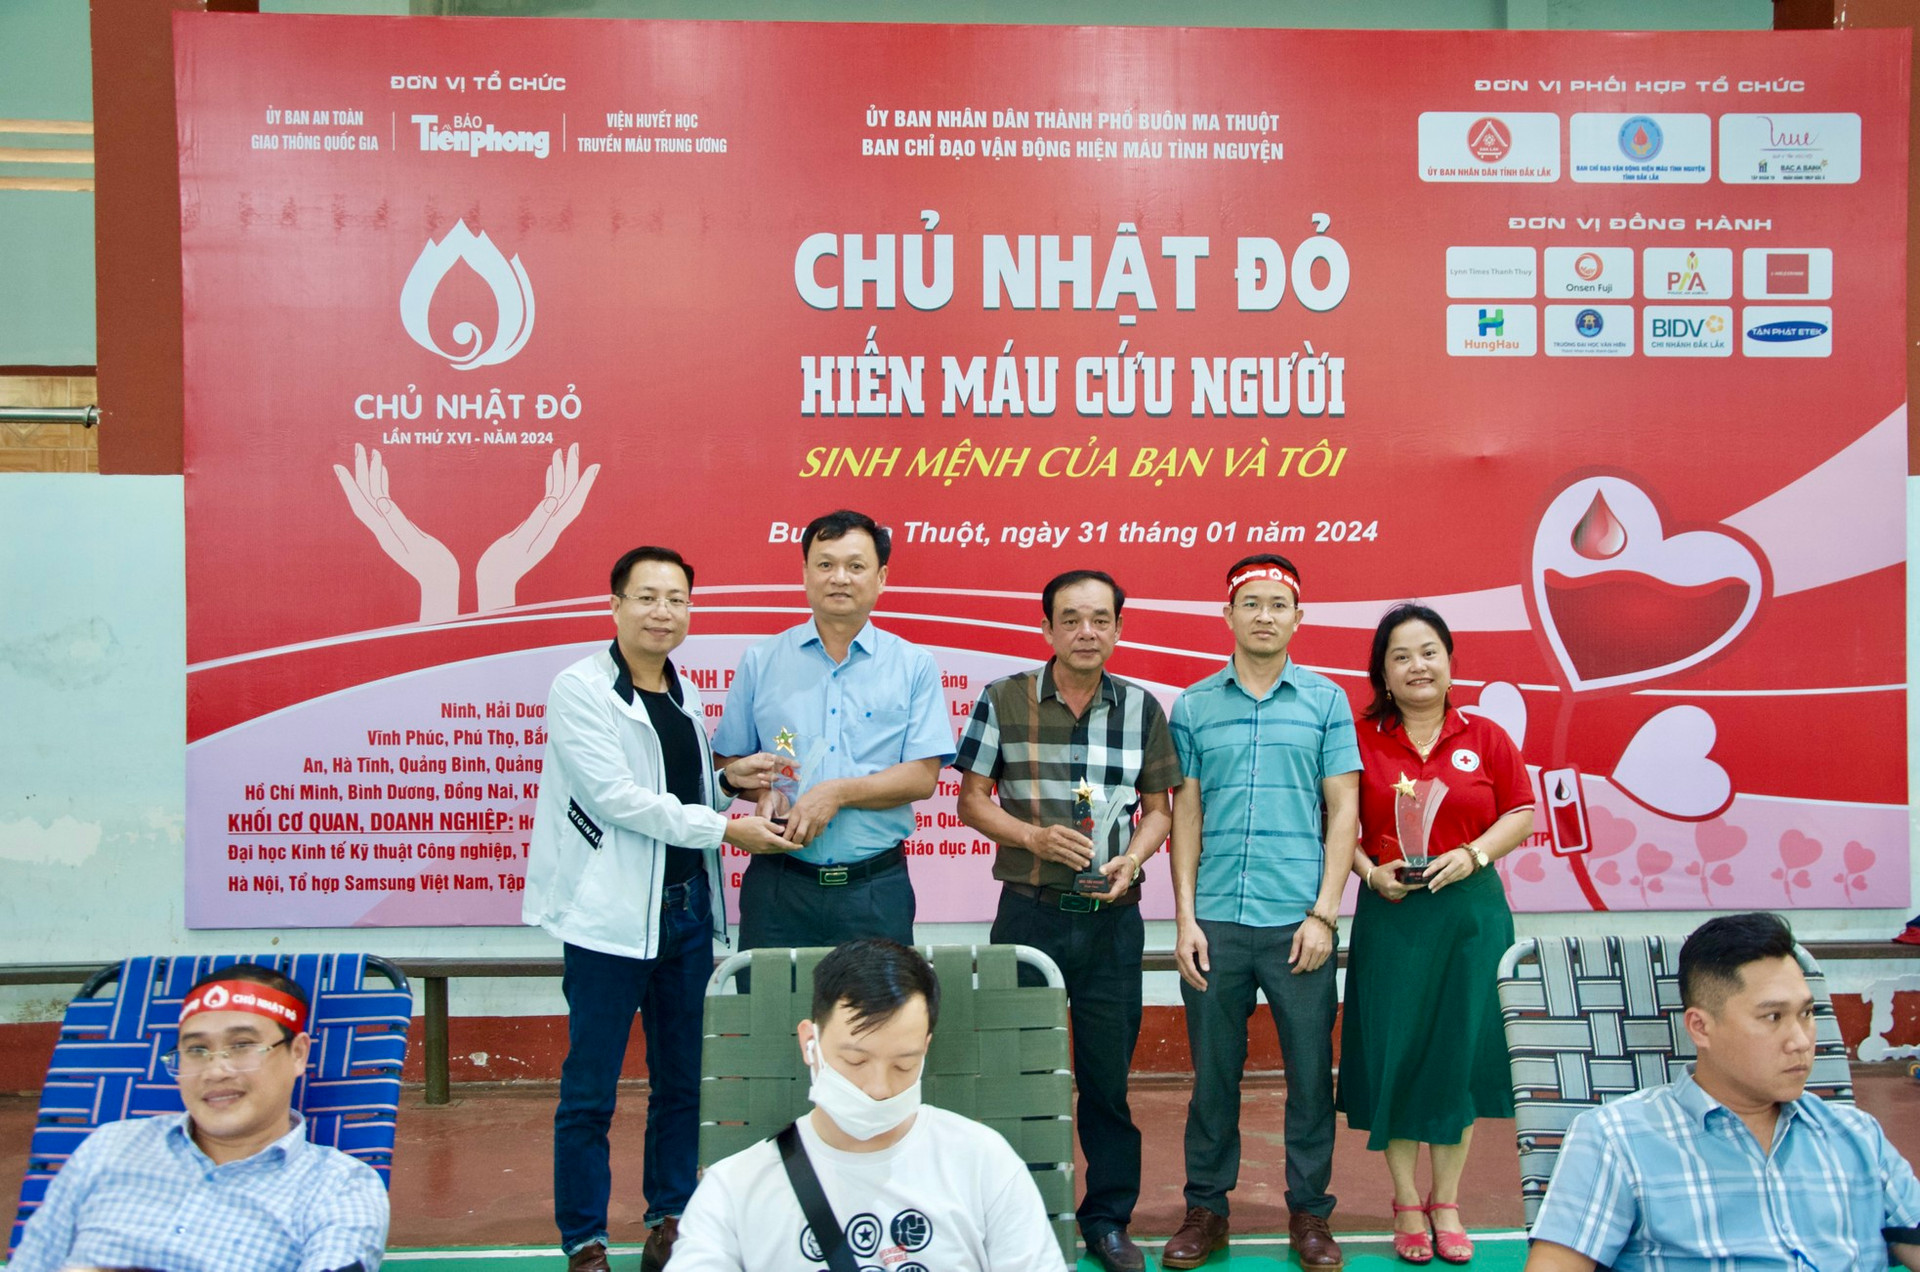 Chủ Nhật Đỏ tại Đắk Lắk: Góp phần giữ nhịp đập trái tim cho những người cần máu ảnh 12